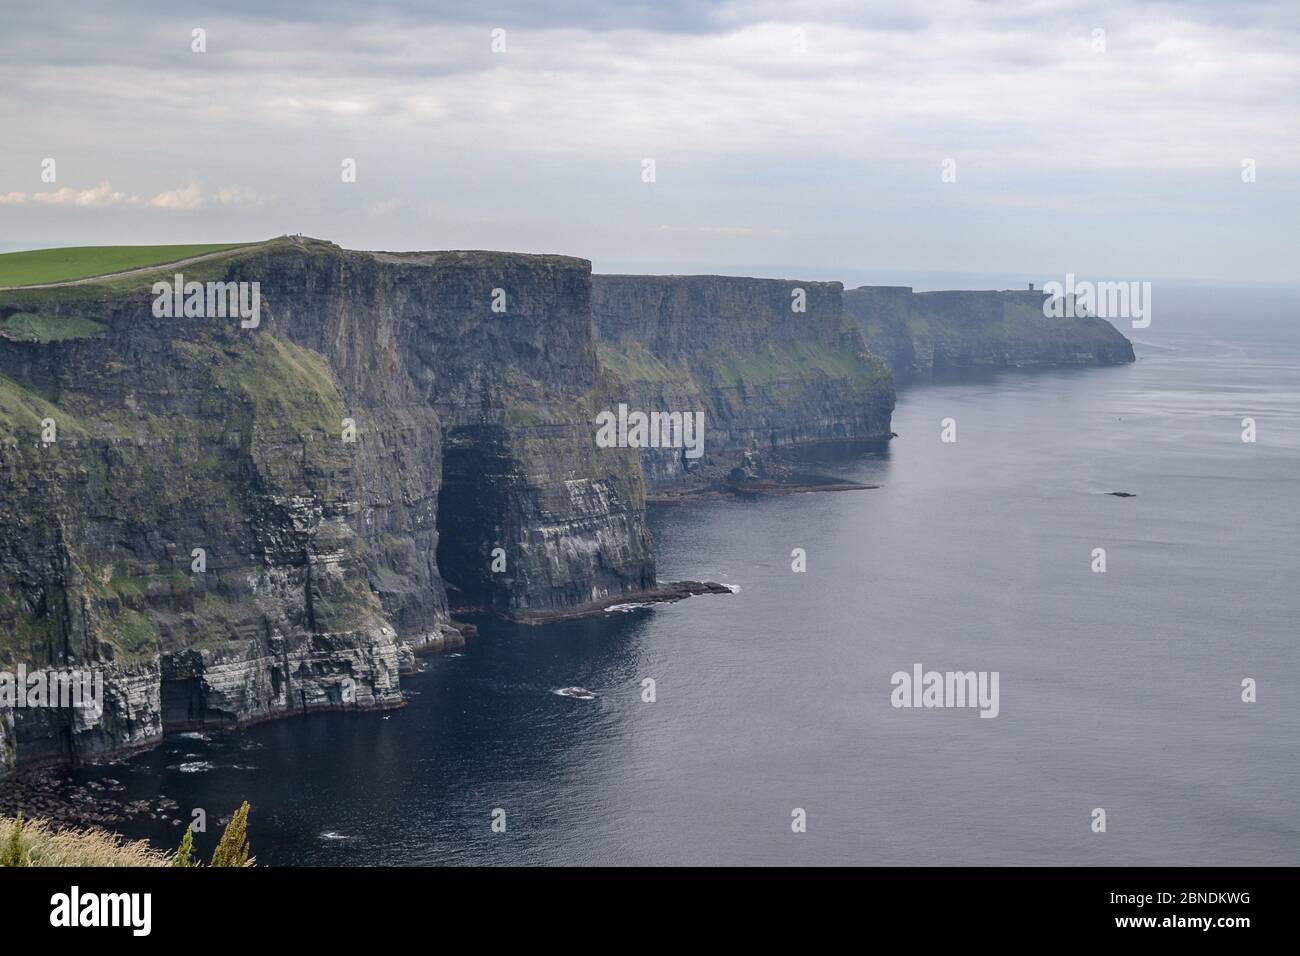 Blick auf die weltberühmten Cliffs of Moher im County Clare Irland. Landschaftlich reizvolle irische Naturdenkmal entlang des wilden atlantikweges  LW AT  . Stockfoto